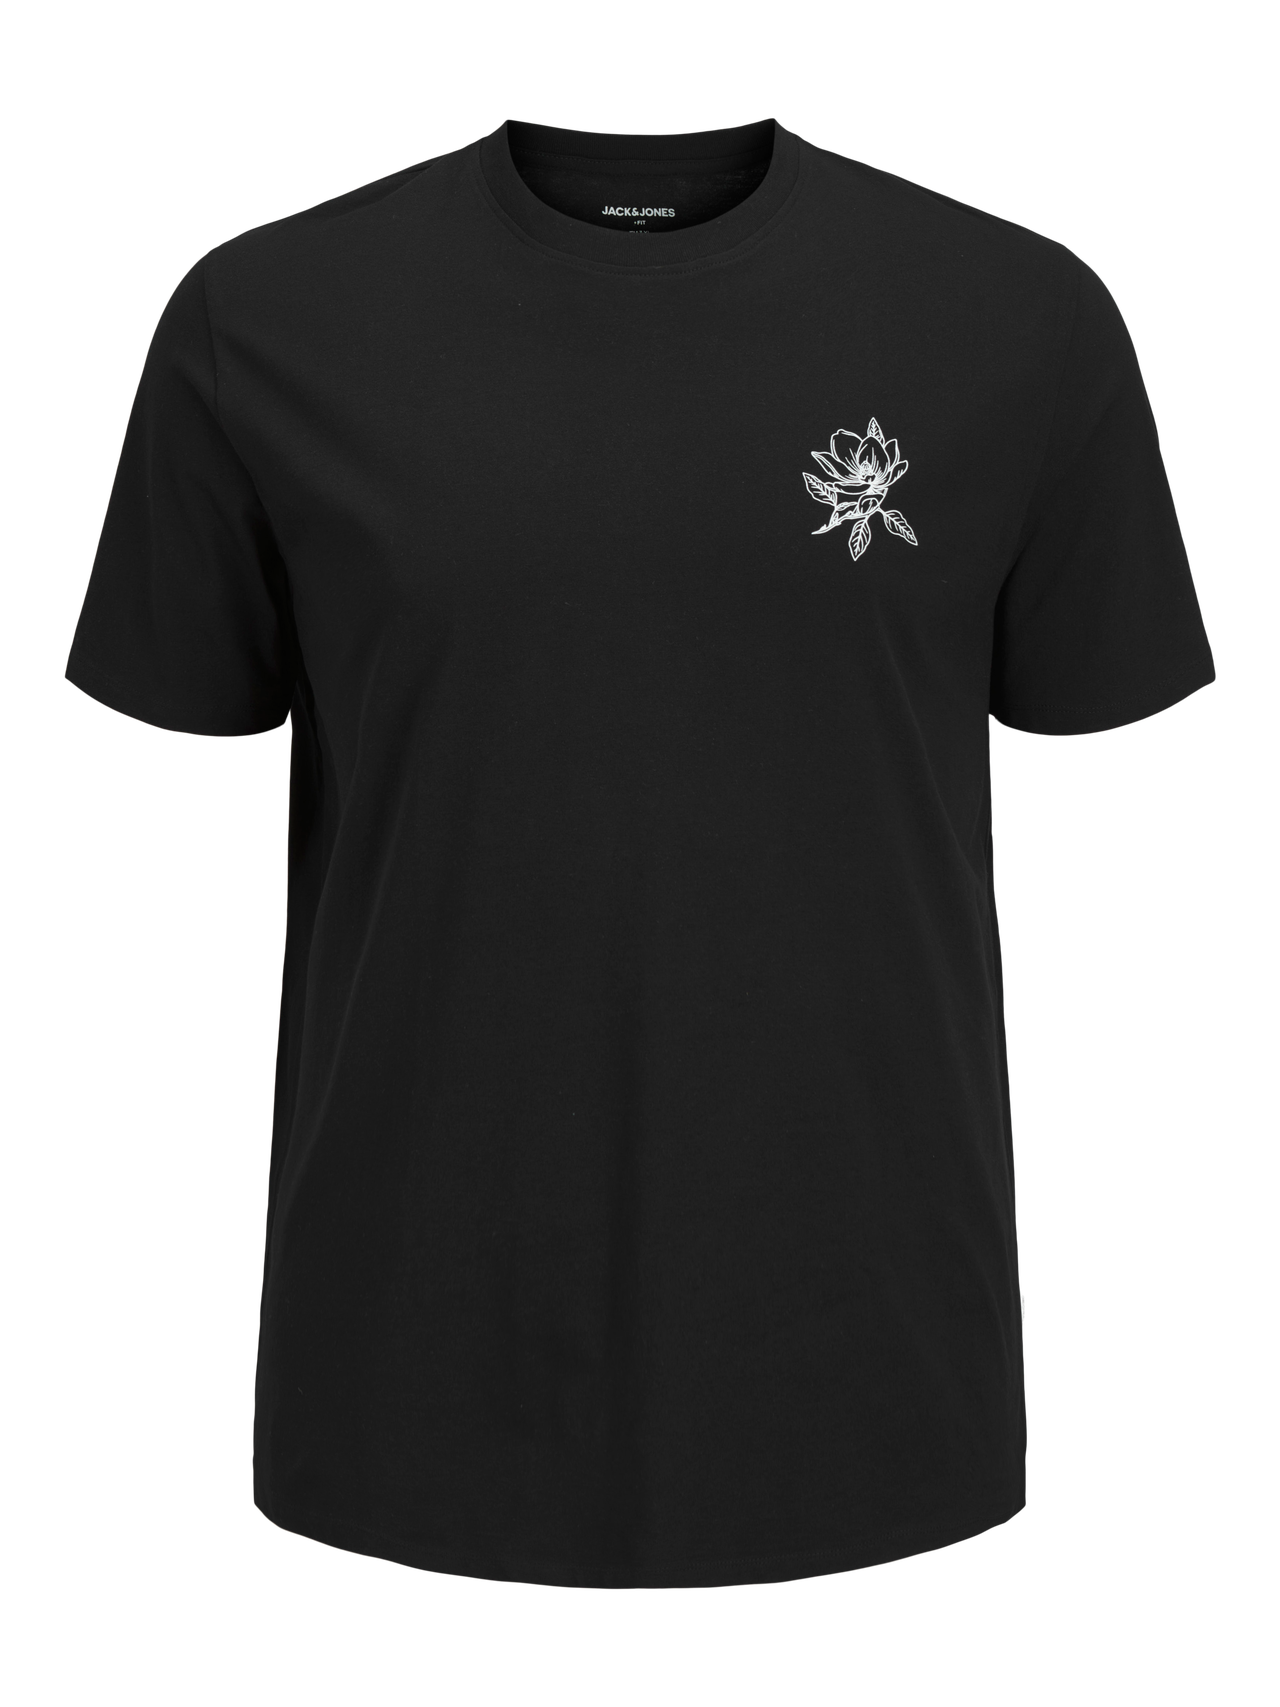 Jack & Jones Plus Size T-shirt Estampar -Black - 12270187